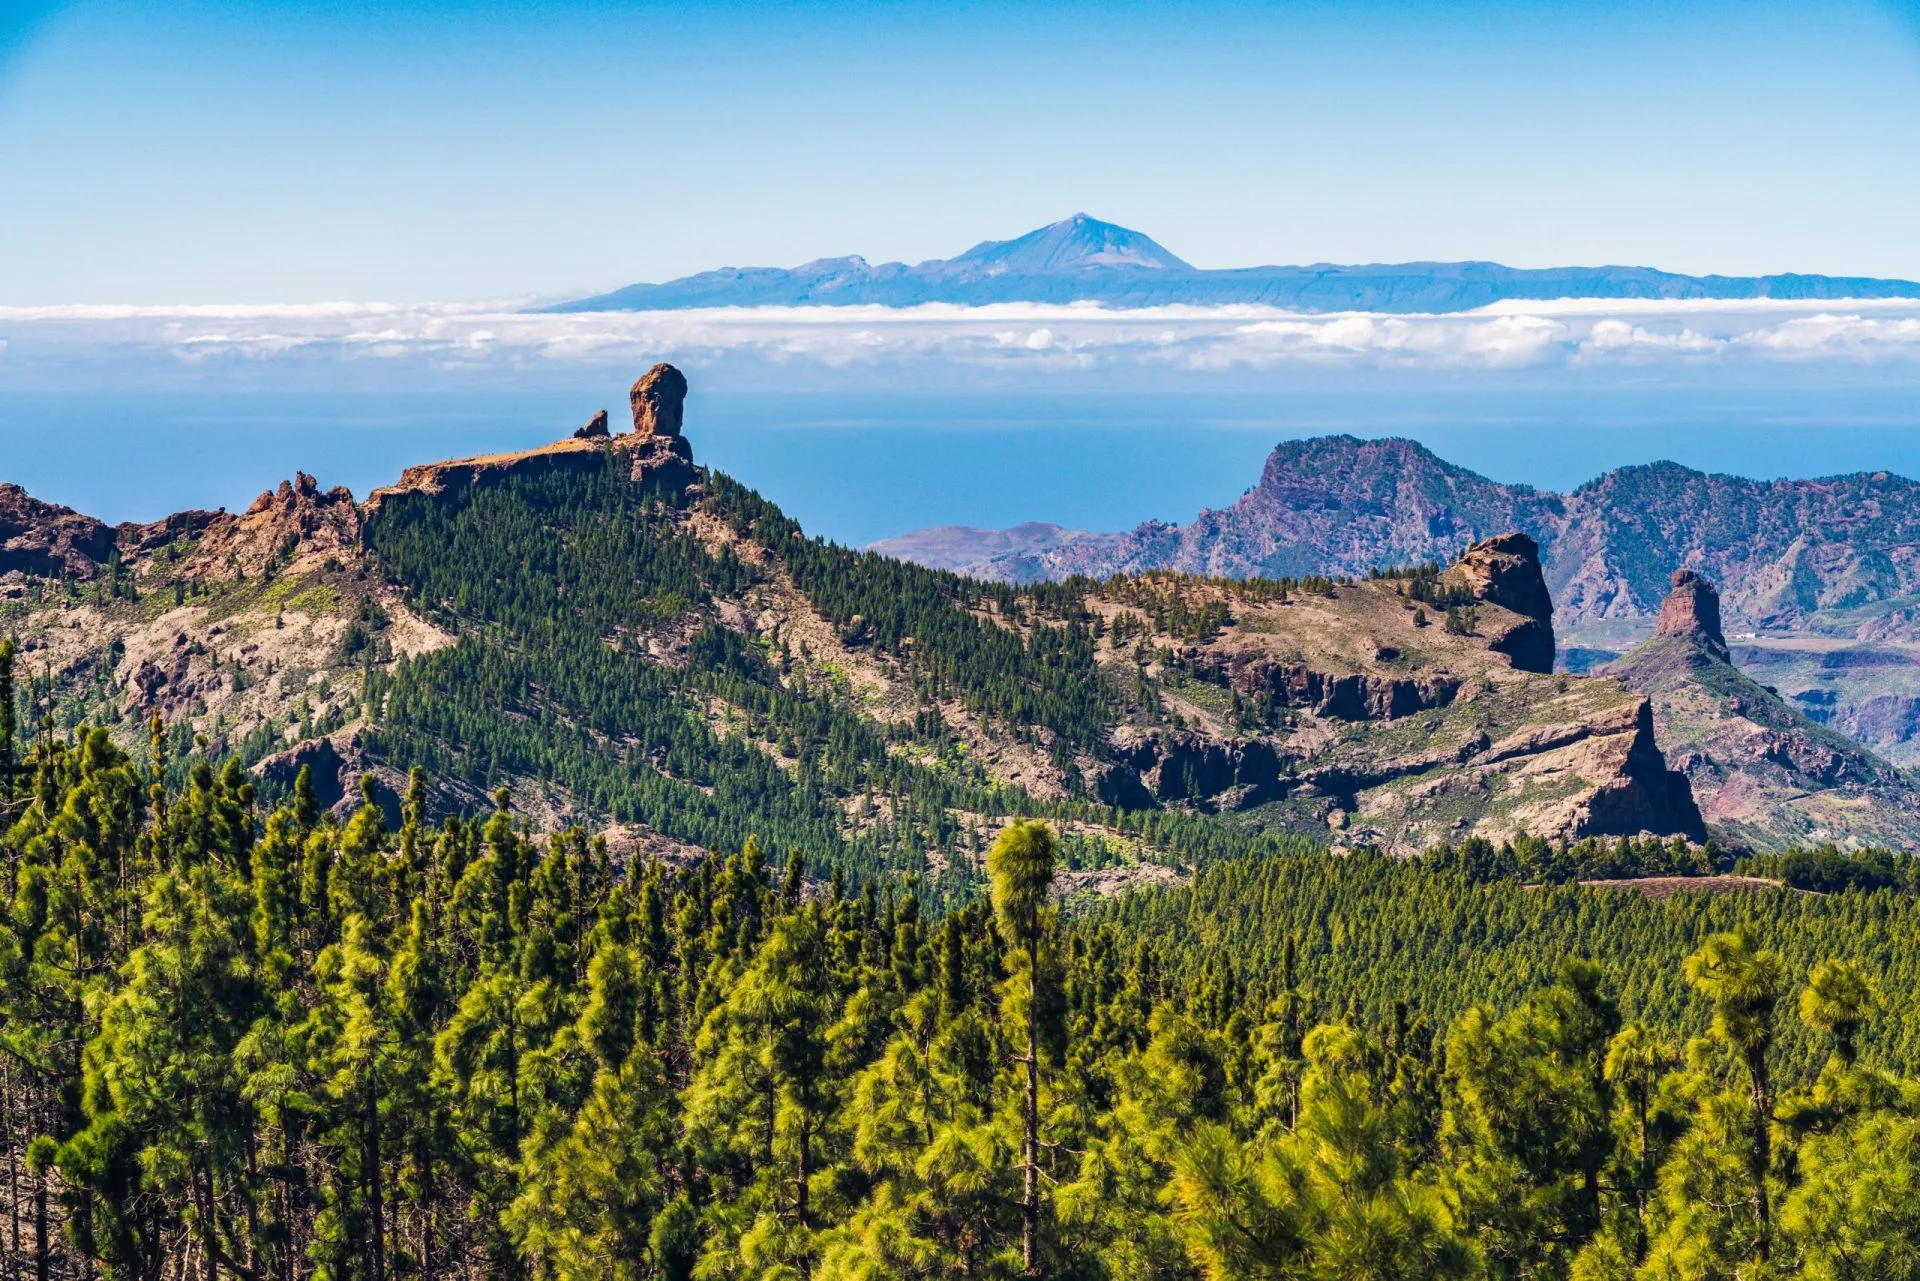 Fargerik og naturskjønn utsikt over Roque Nublo og El Teide - Tejeda, Gran Canaria, Kanariøyene, Spania